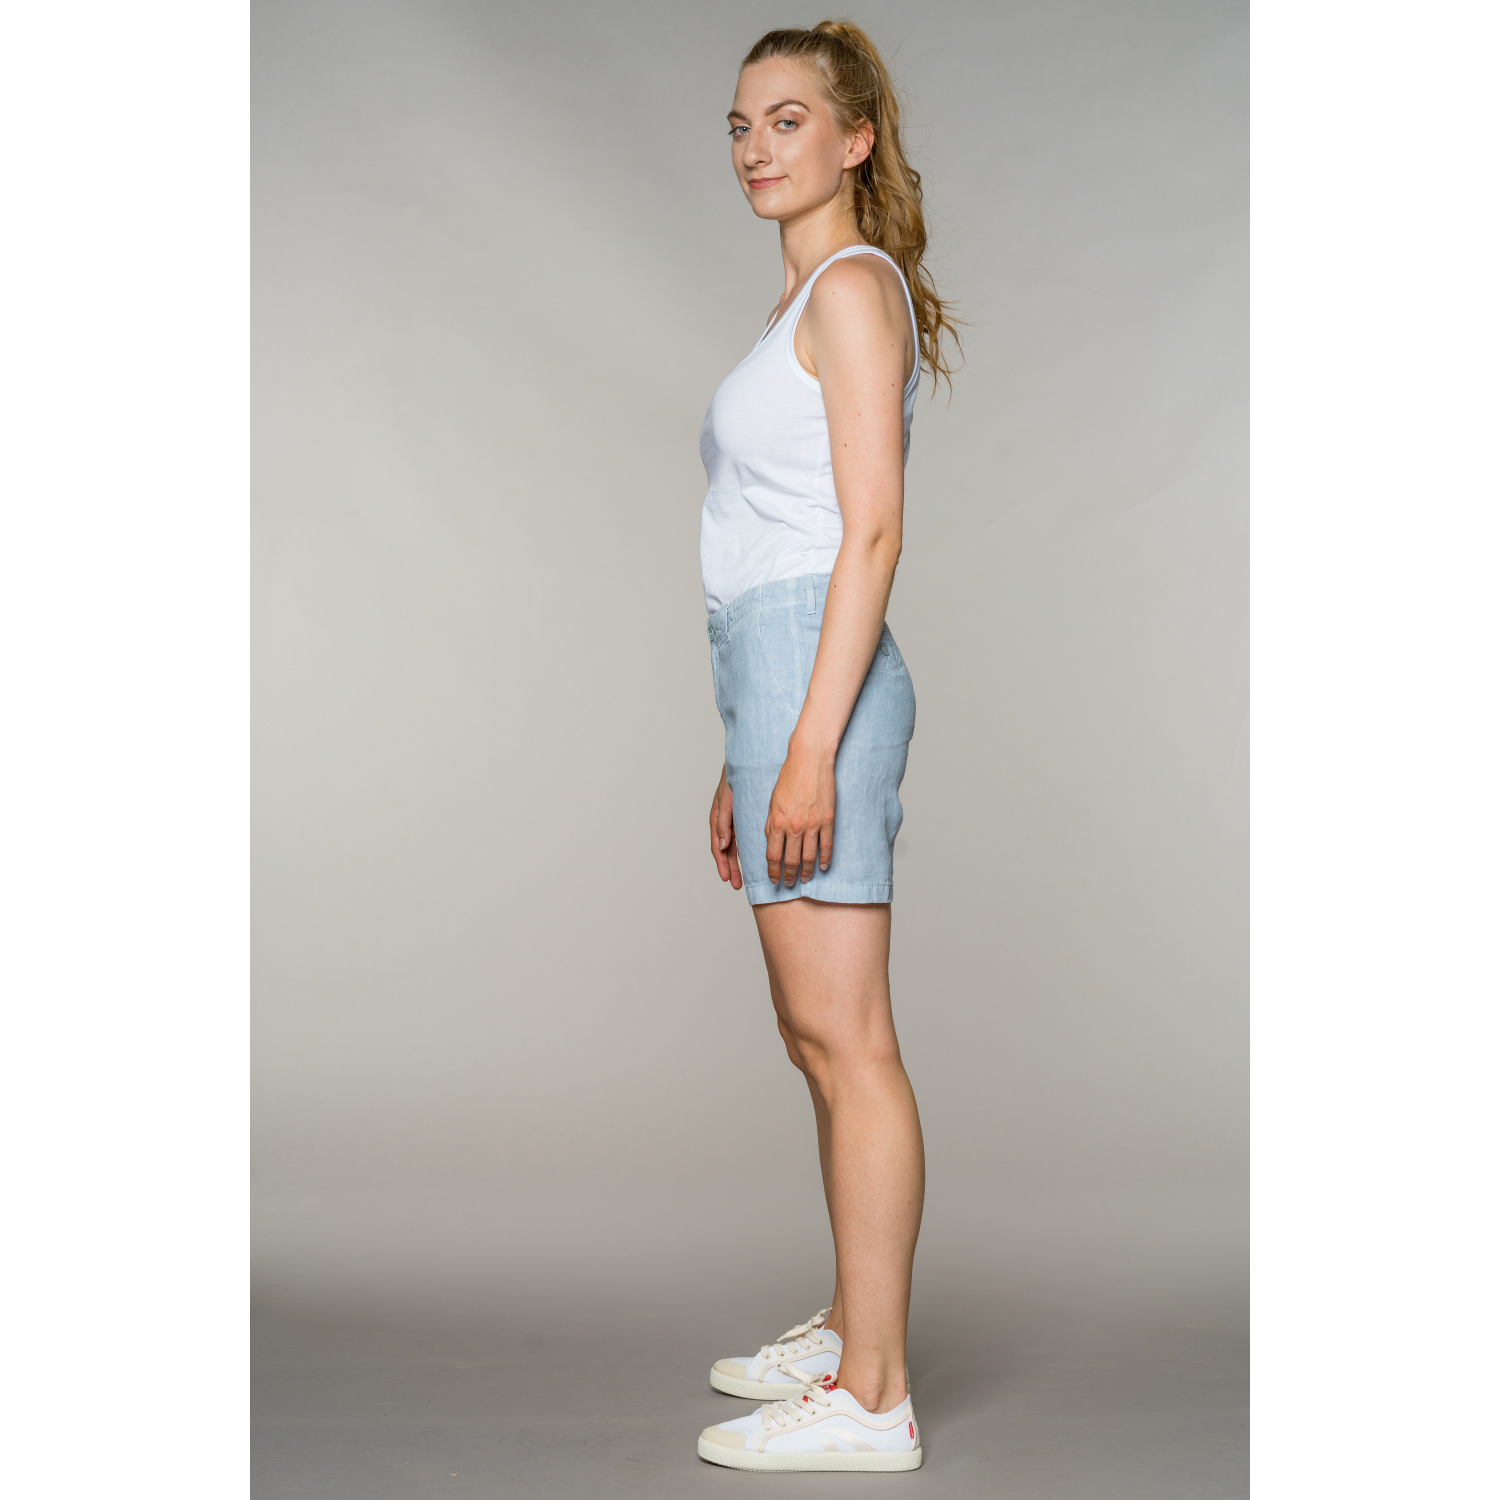 fv-Sti:na | Shorts | Pure Linen I feuervogl